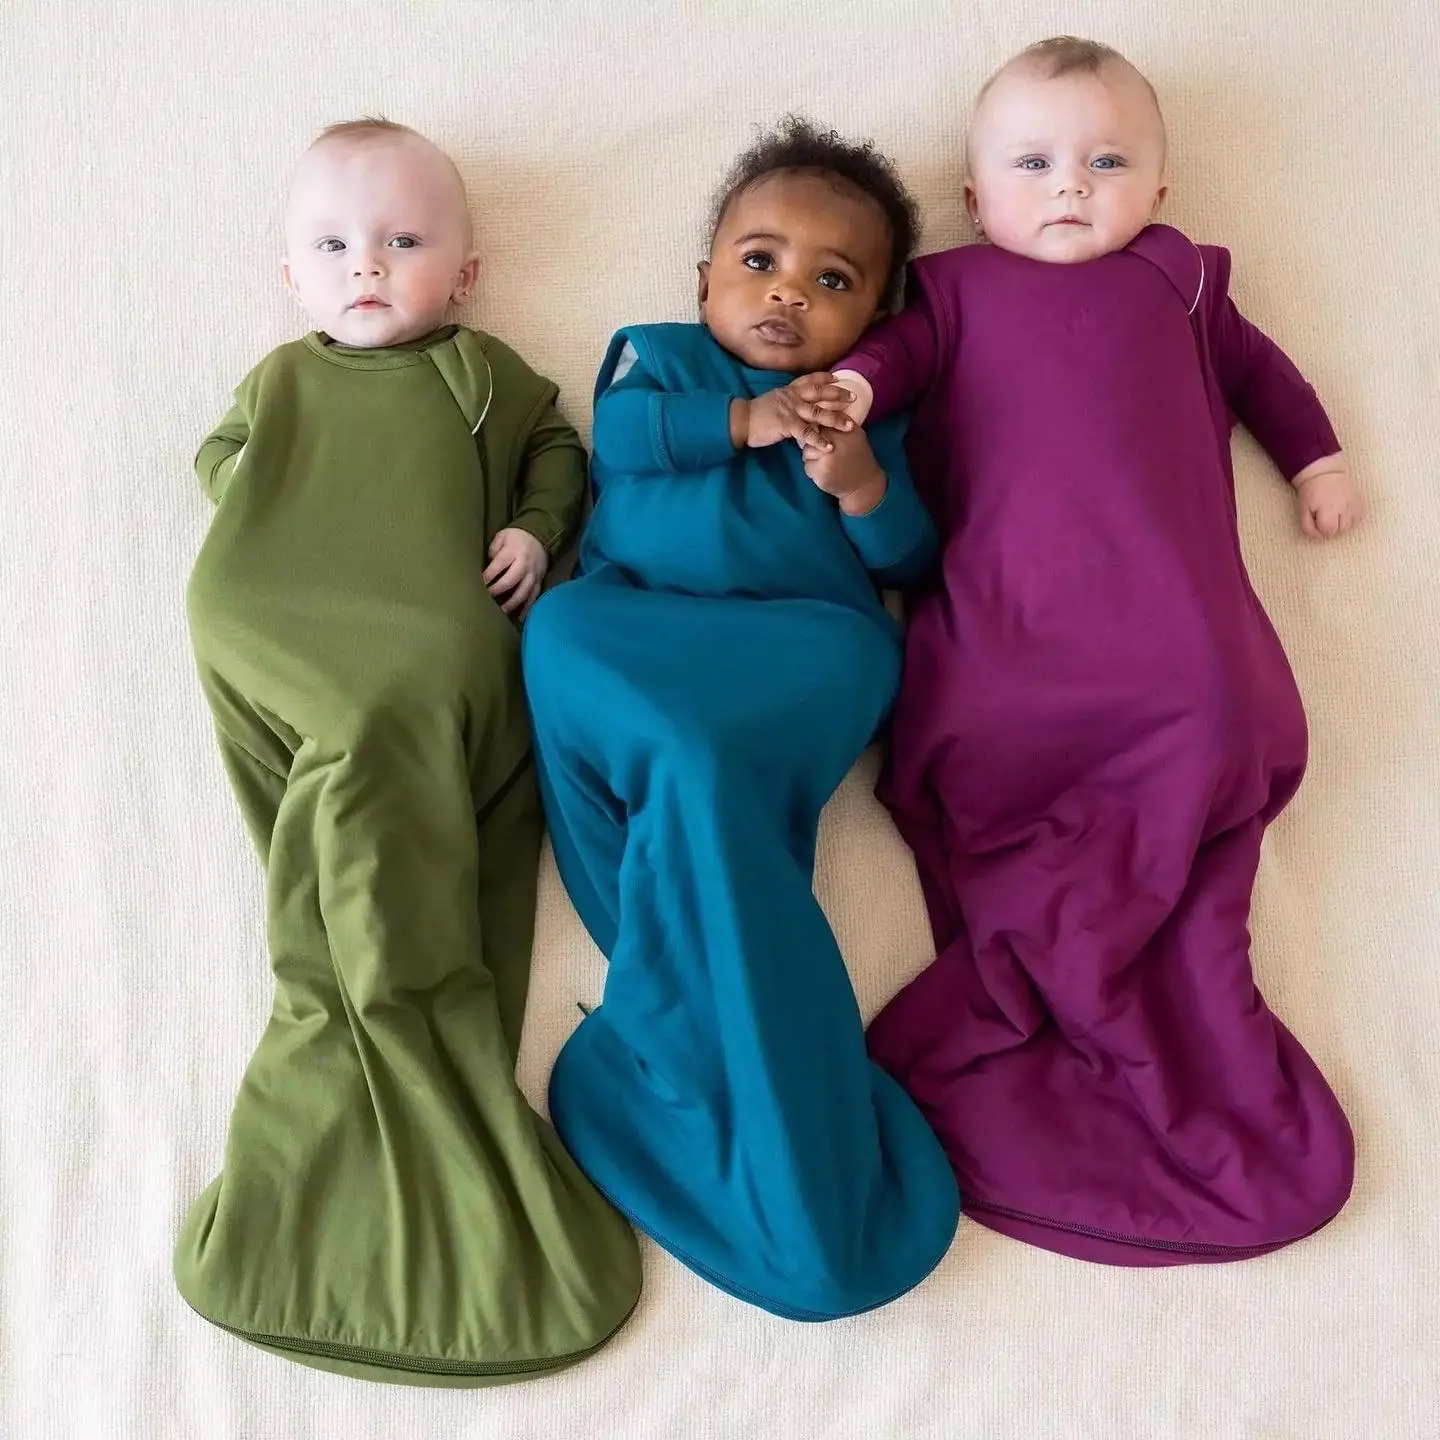 Nouveau-né bébé vêtements enfants sac de couchage tissu uni solide 0.5 Tog 1.0 Tog 100% bambou Spandex tricoté sac de couchage sac de couchage